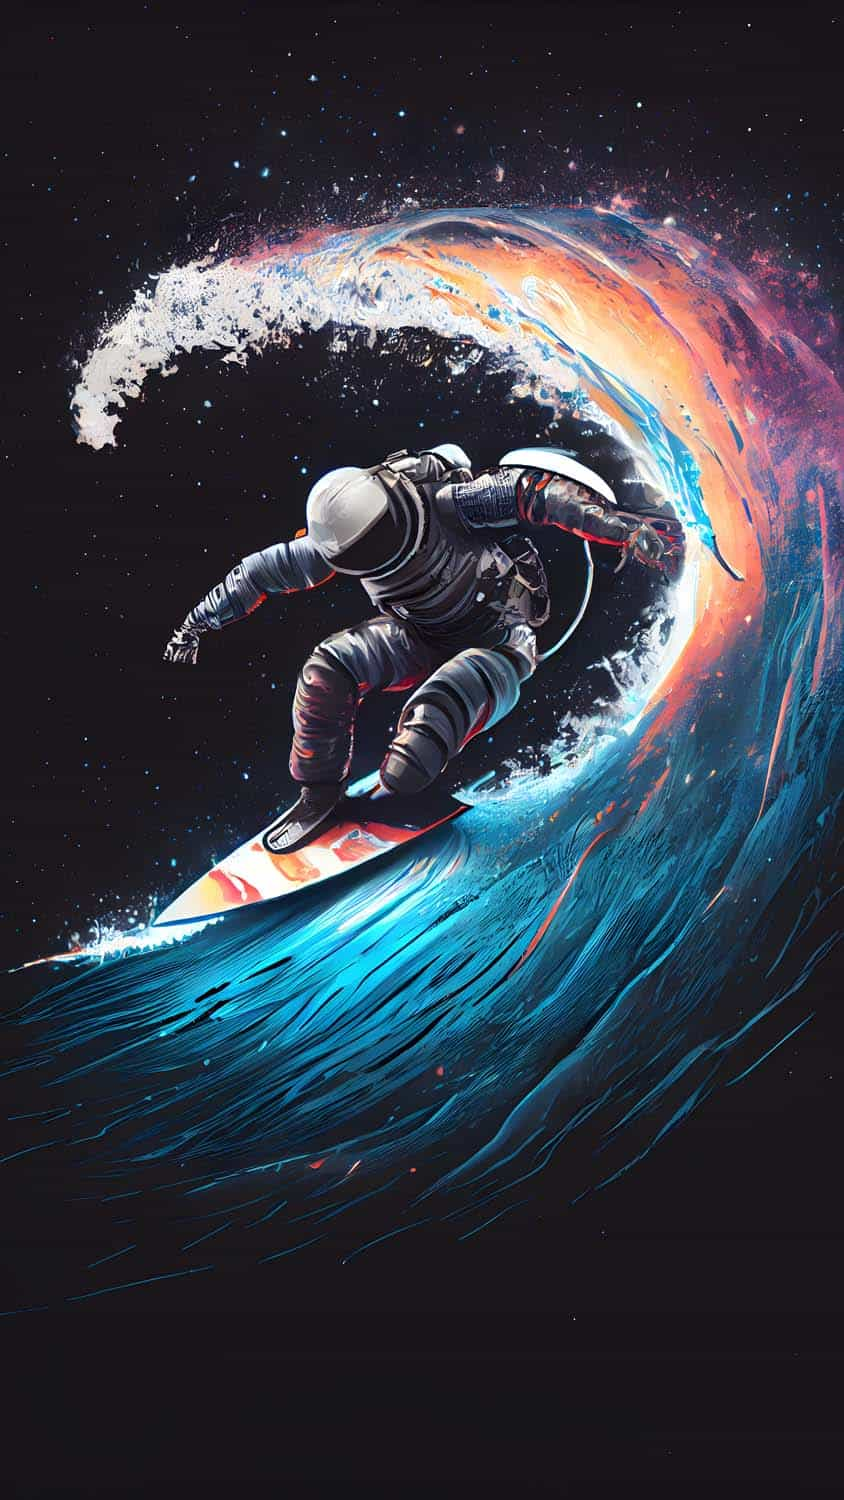 Astro Surfing